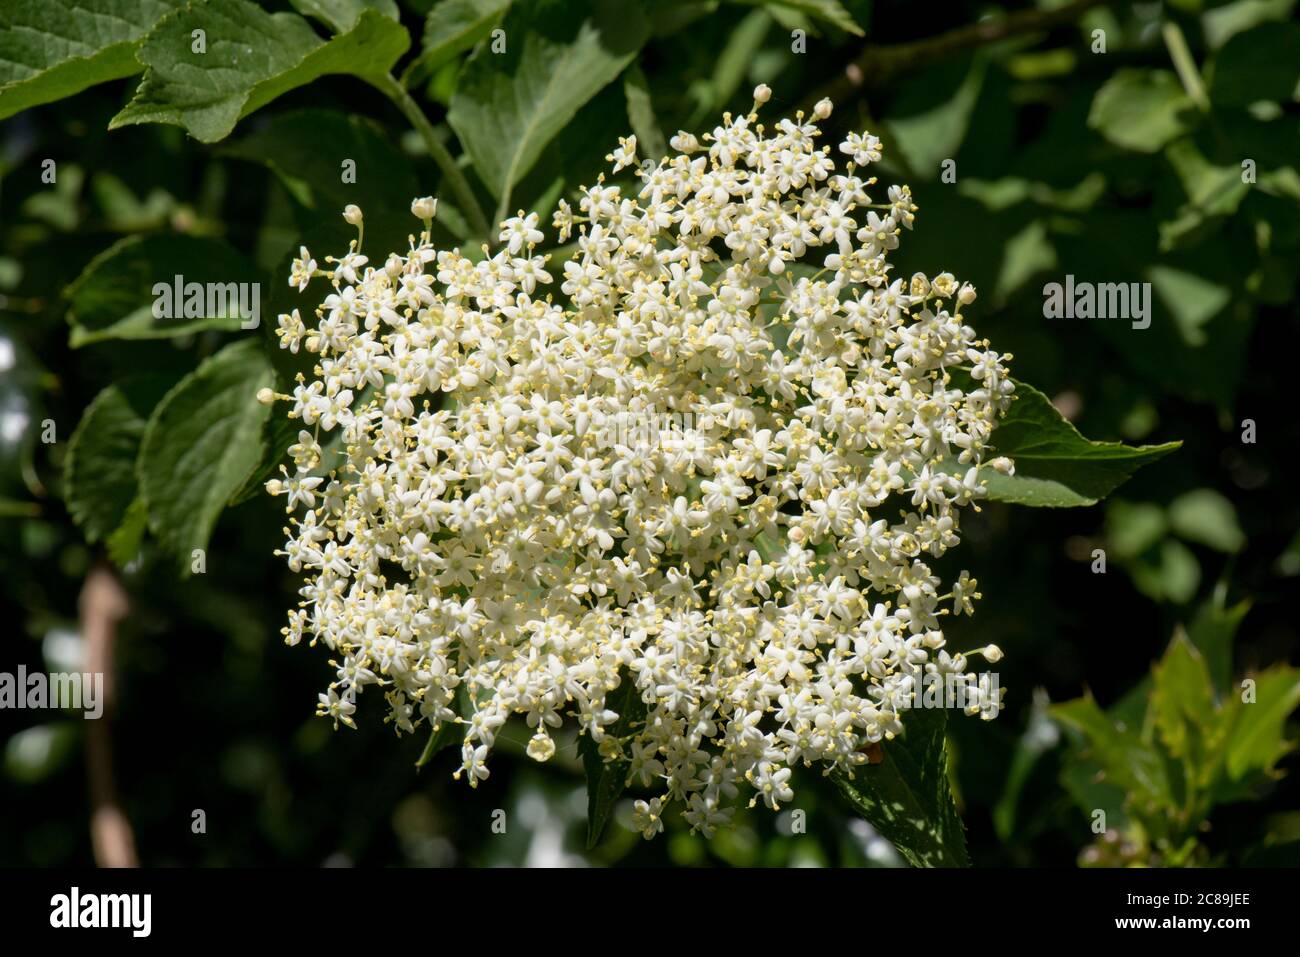 Holunder (Sambucus nigra) weiße Blütengruppe mit Blättern auf einem blühenden wilden Strauch oder kleinen Baum, Berkshire, Mai Stockfoto